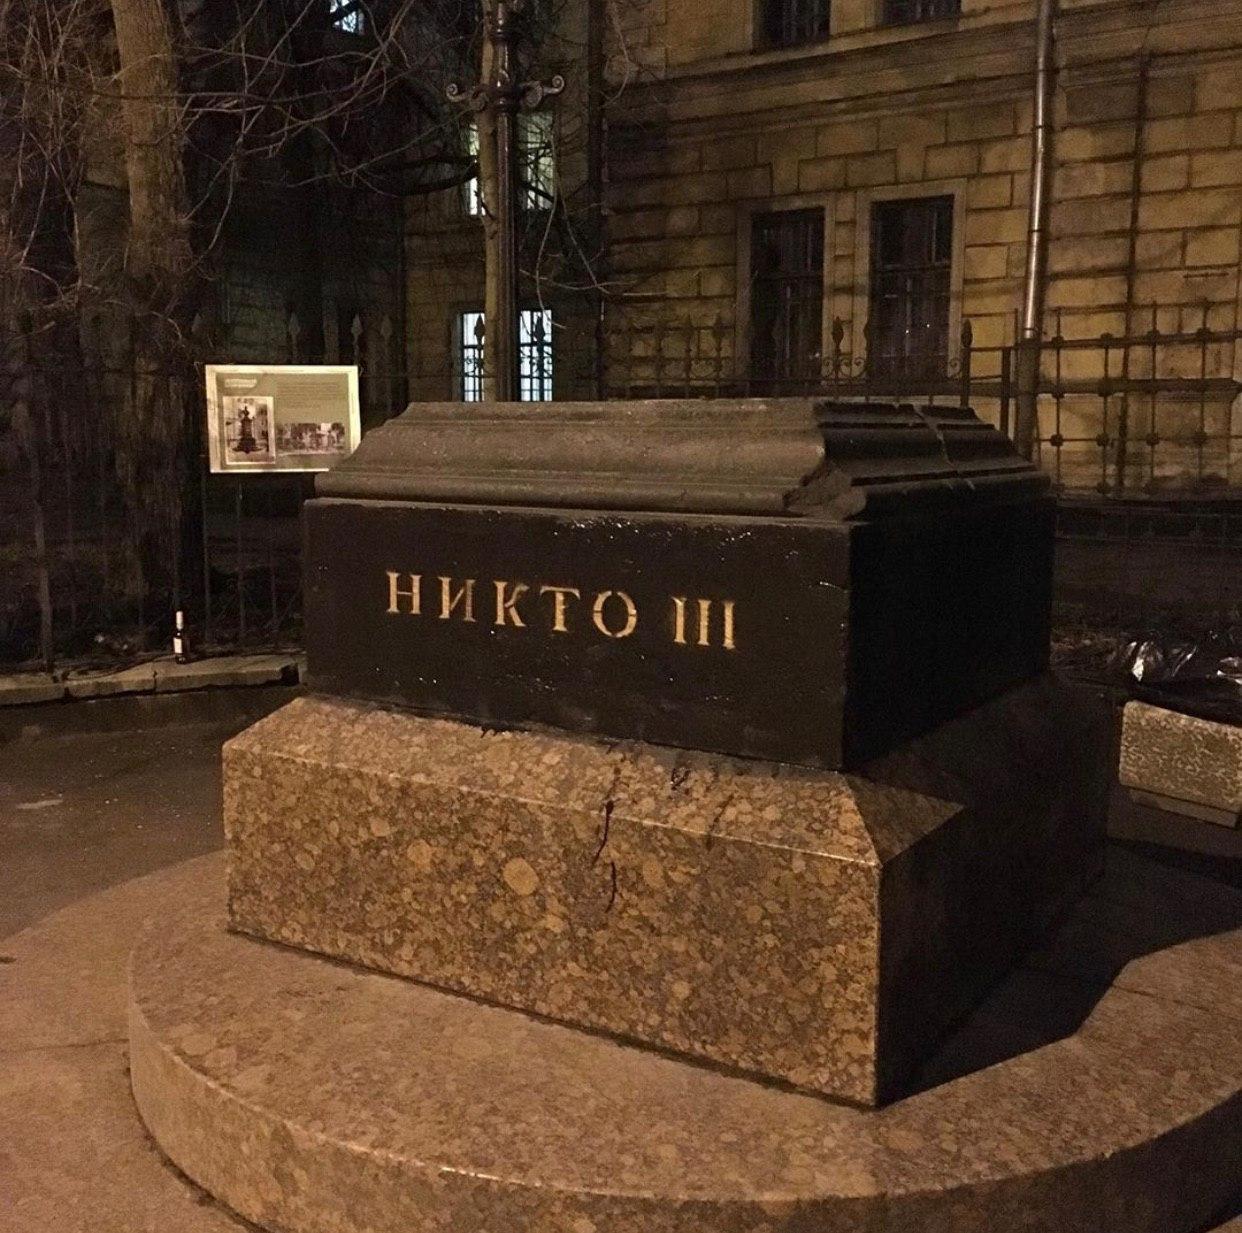 Интересная игра началась с постаментом от памятника Александру II в Санкт-Петербурге